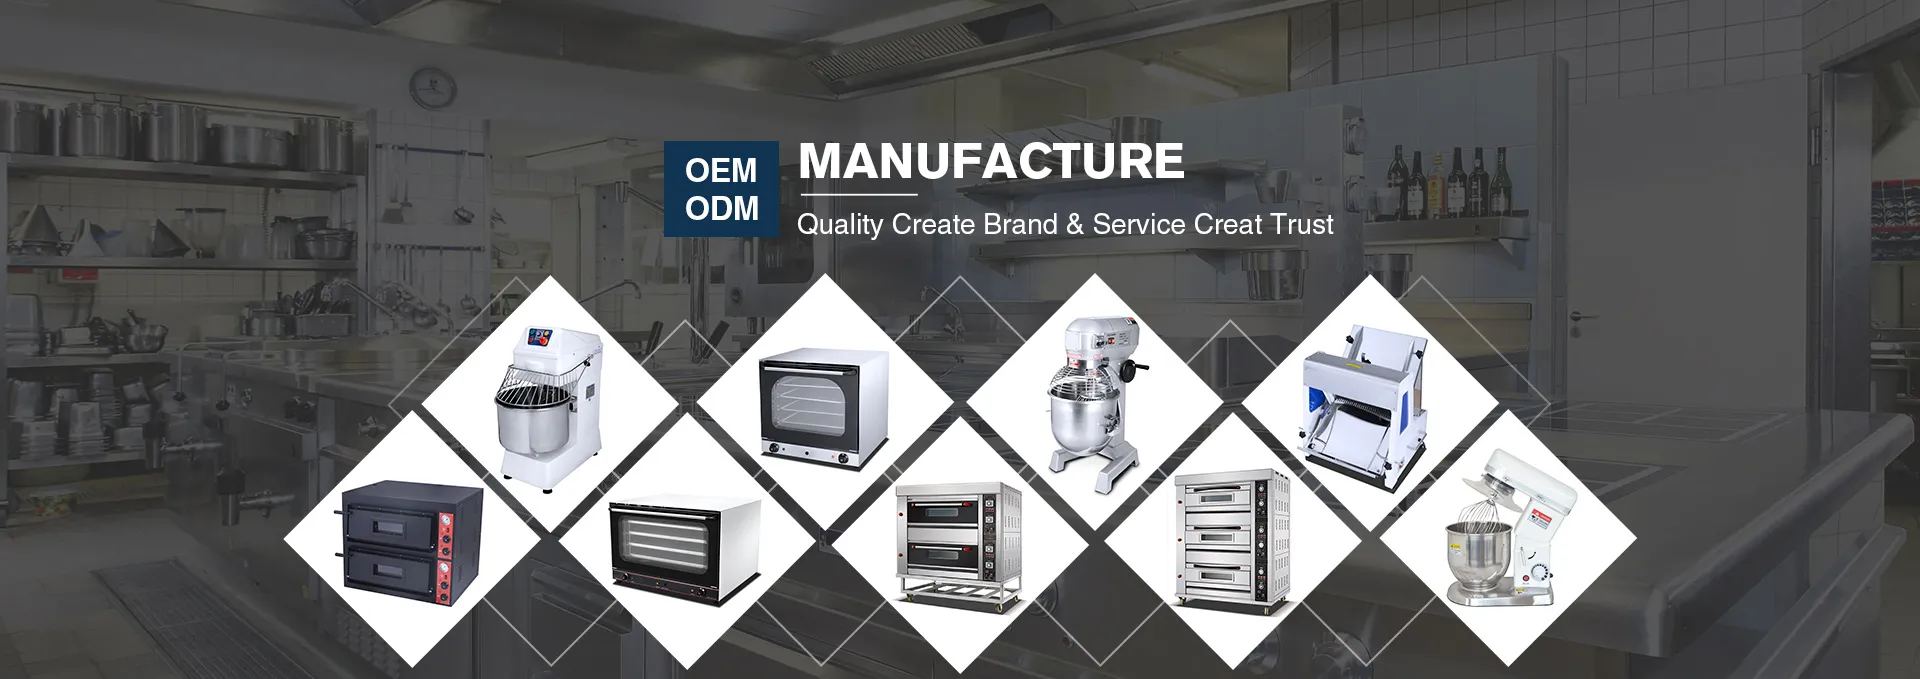 ODM质量创造品牌与服务创造信任